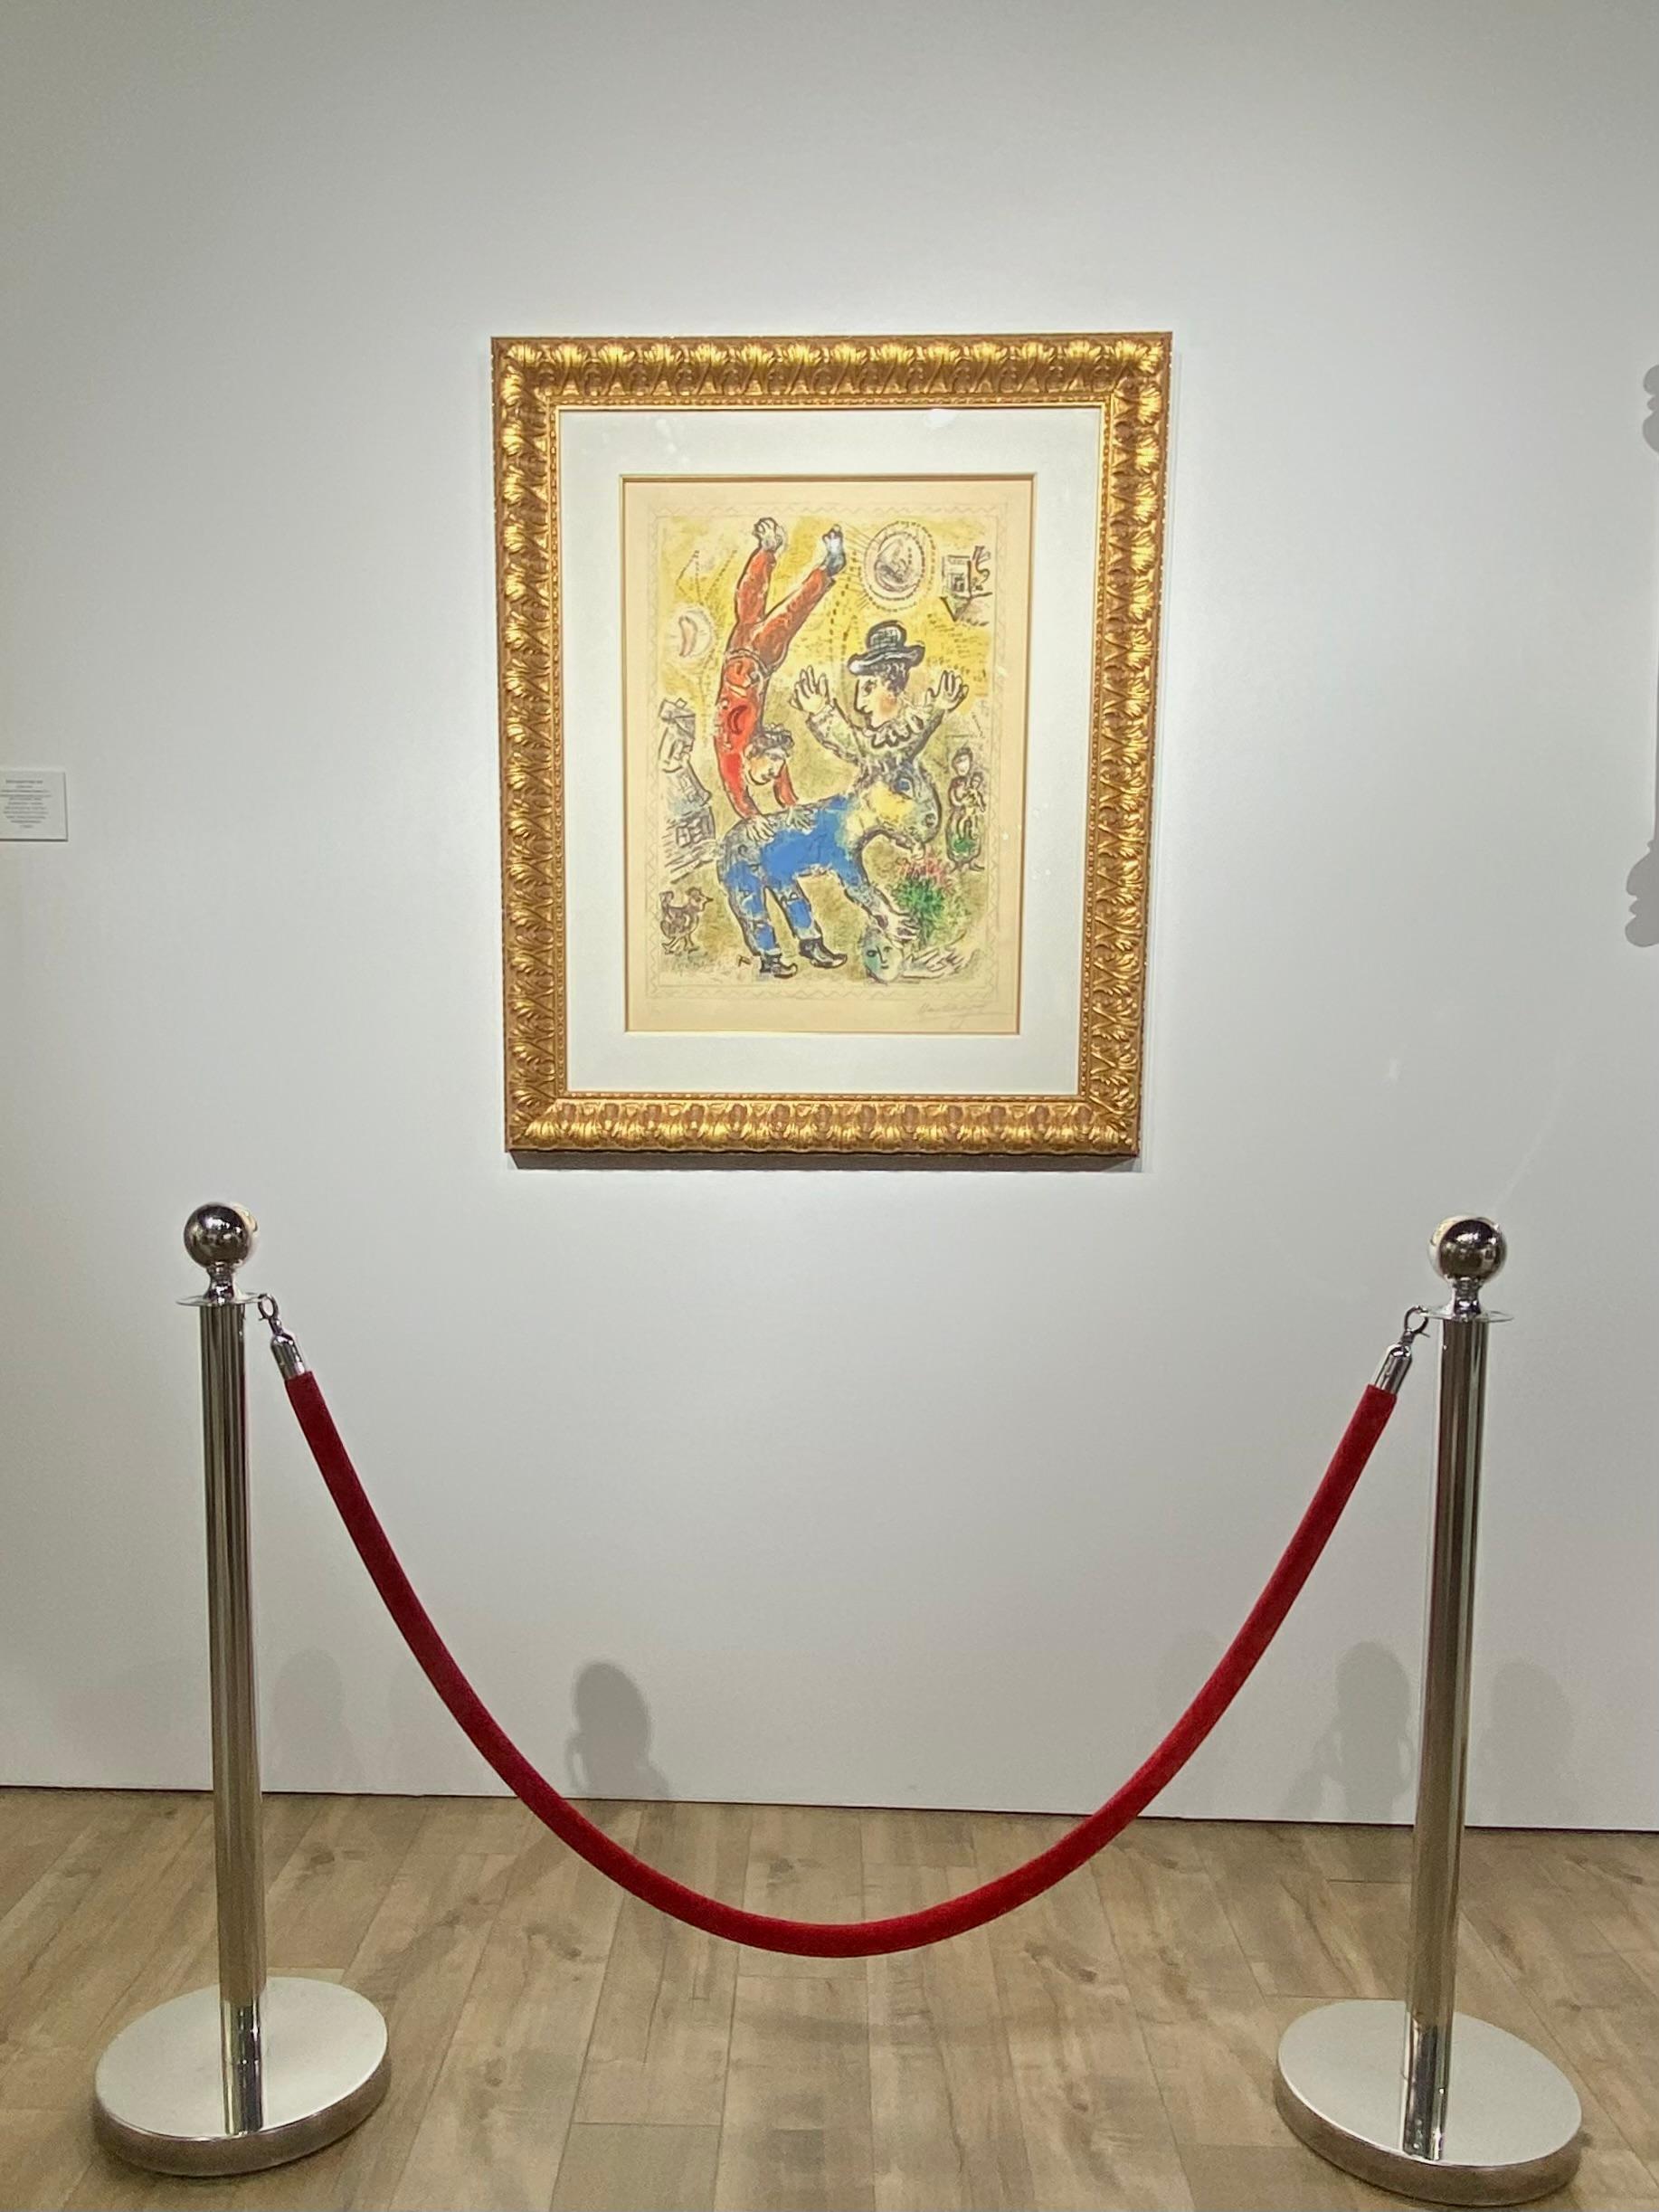  MARC CHAGALL 1887 - 1985 
L'acrobate rouge
1974
Farblithographie
69x51,5 cm, Bild; 83x64 cm, Blattgröße
Vom Künstler mit Bleistift rechts unten signiert 